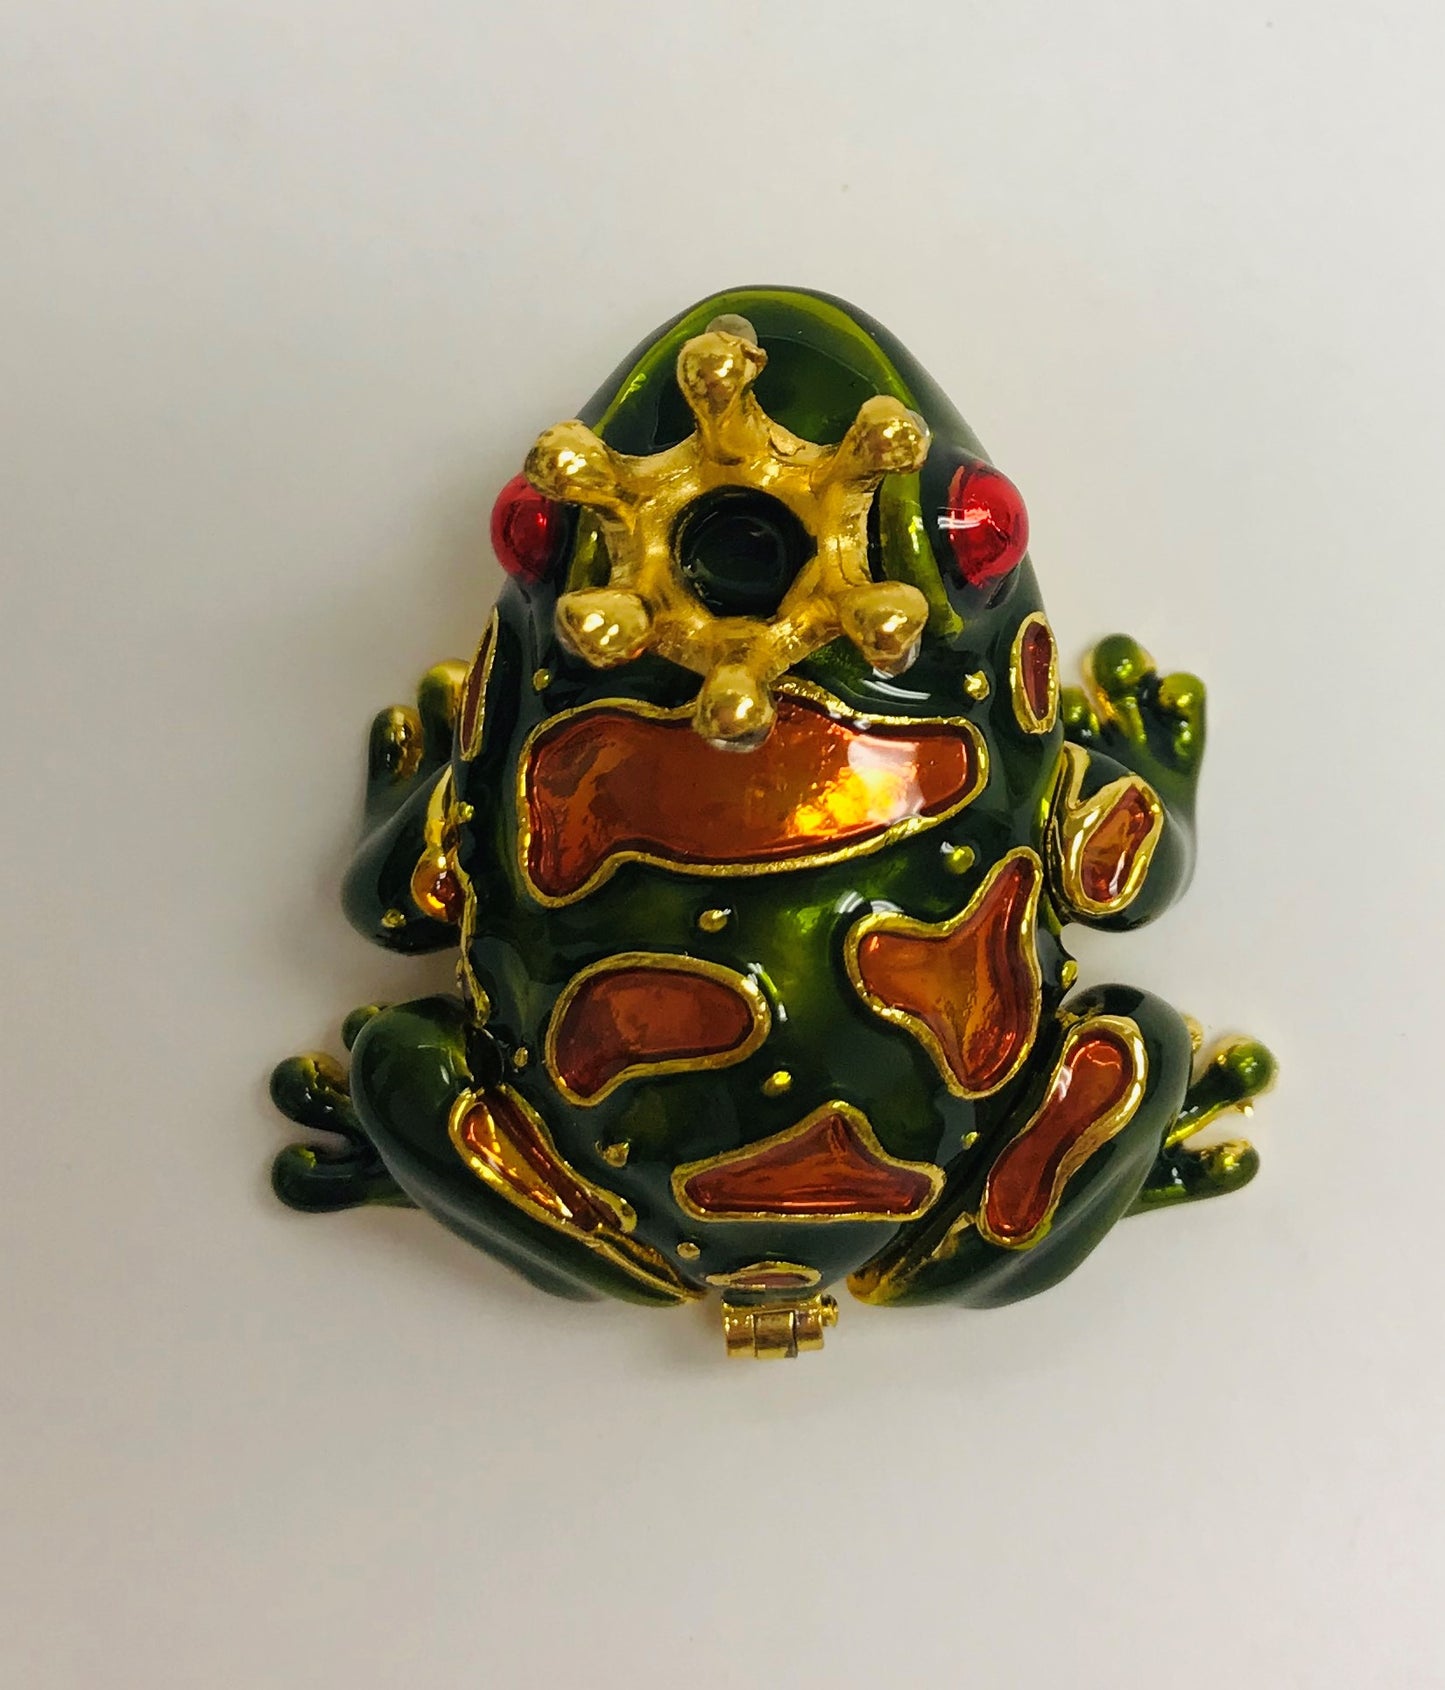 Cristiani Collezione Small Frog Trinket Box.